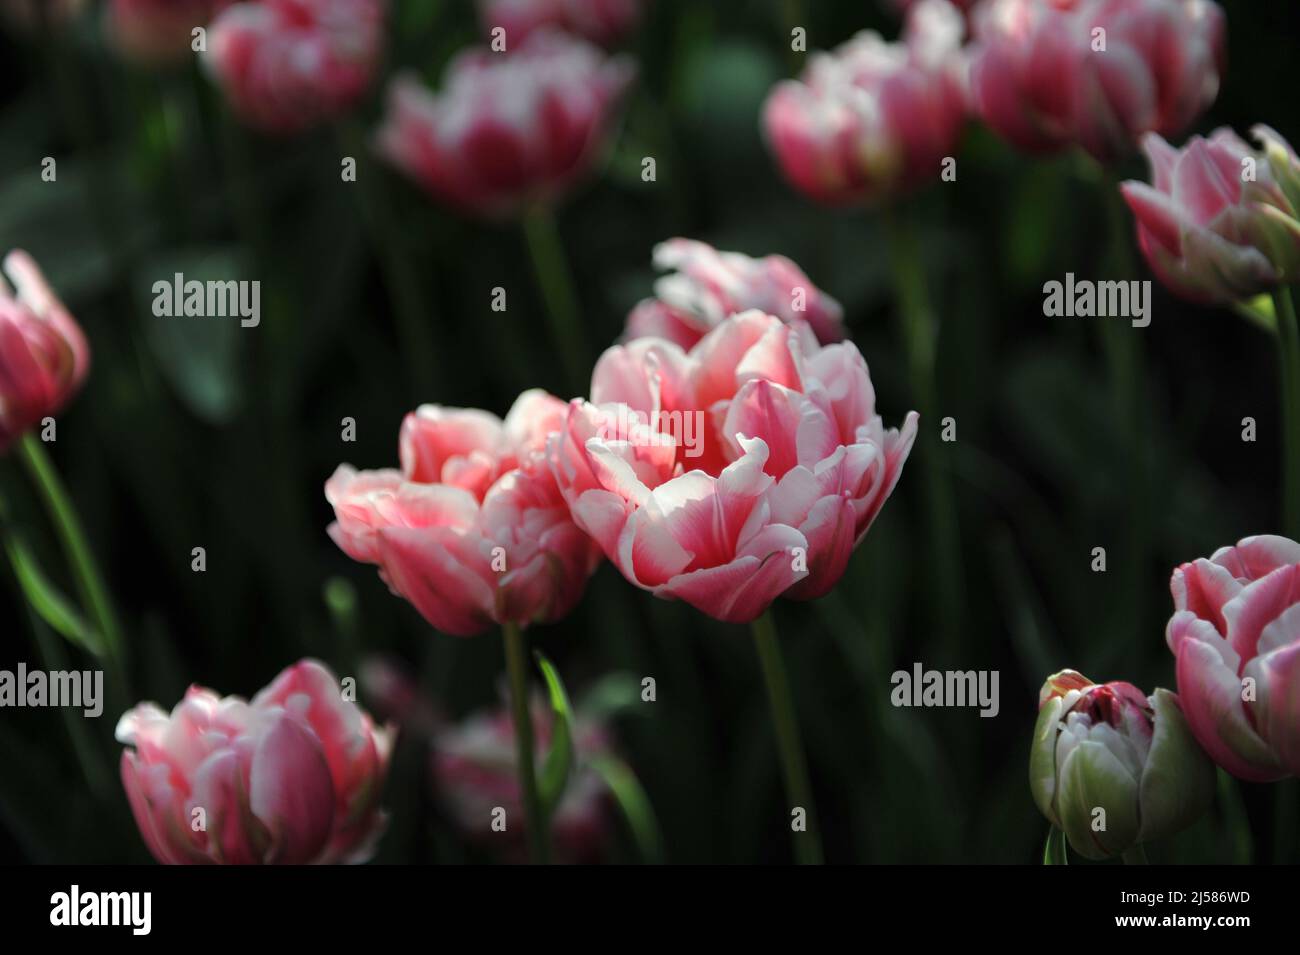 Fleurs de pivoines roses et blanches Double tulipes précoces (Tulipa) Fantasy Lady Bloom dans un jardin en mars Banque D'Images